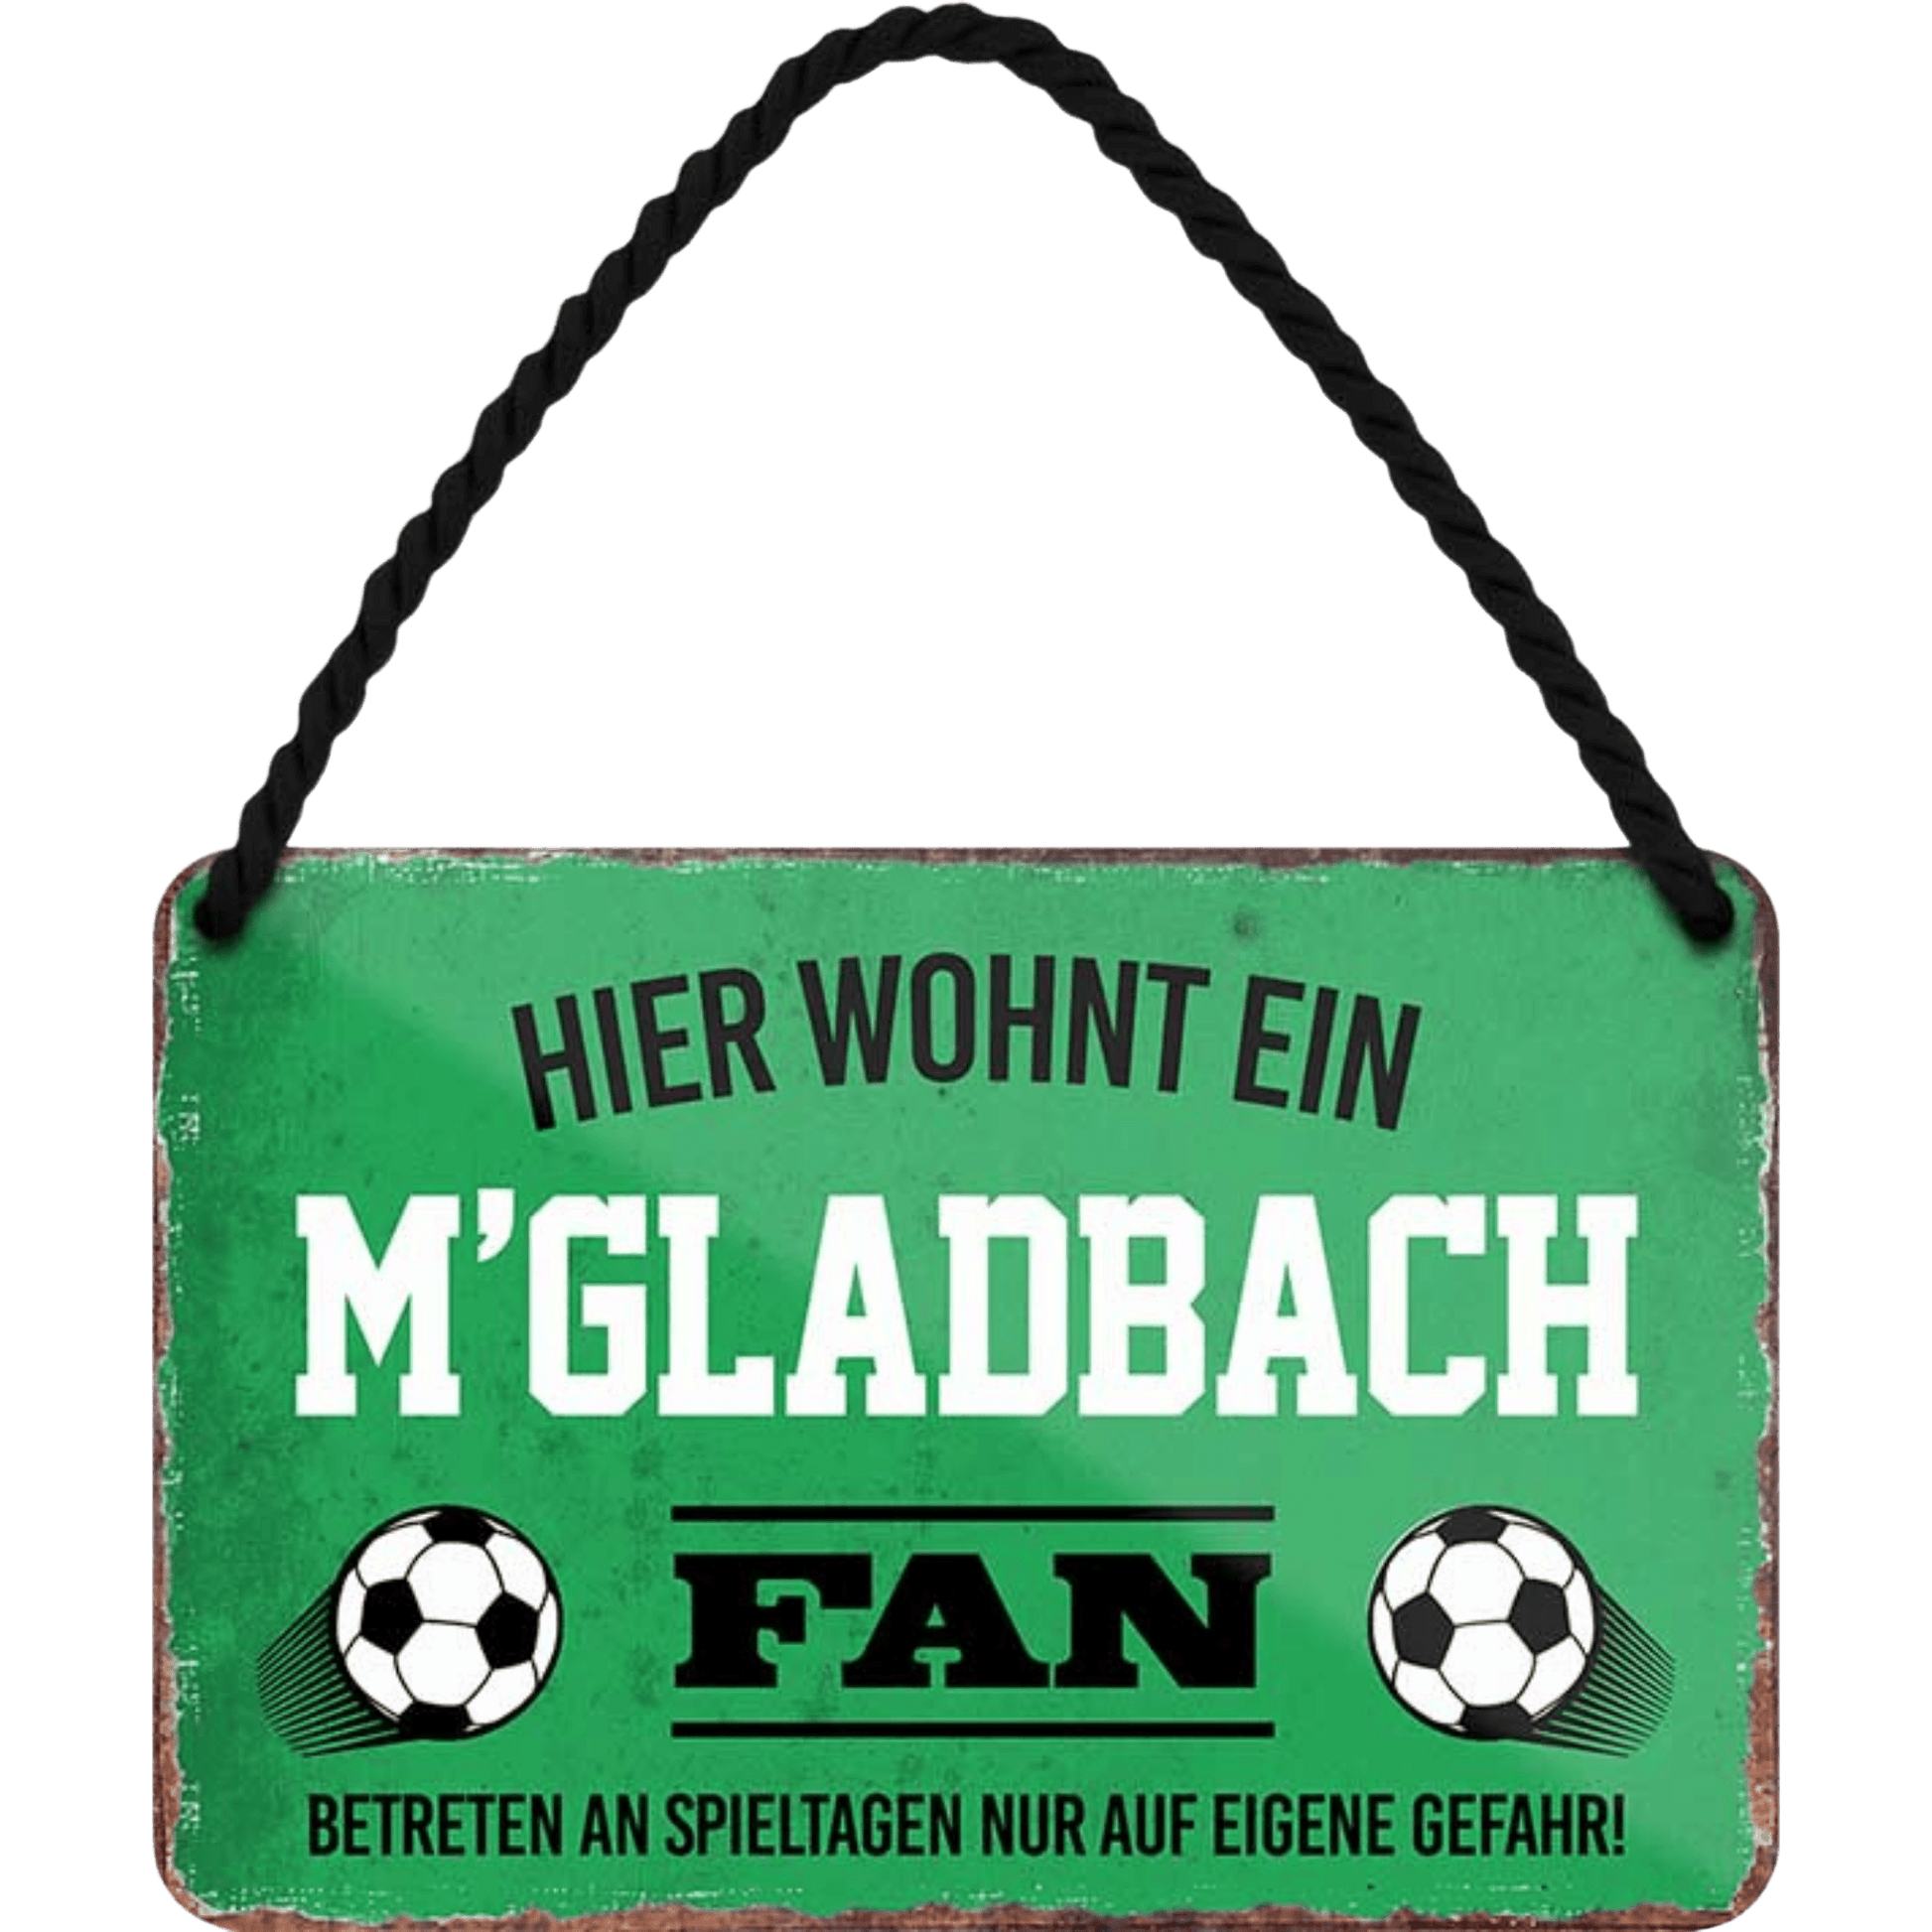 Mönchengladbach Fanartikel Blechschilder - Man Cave Germany 18 x 12 cm (Hier wohnt ein M'Gladbach Fan) Blechschild